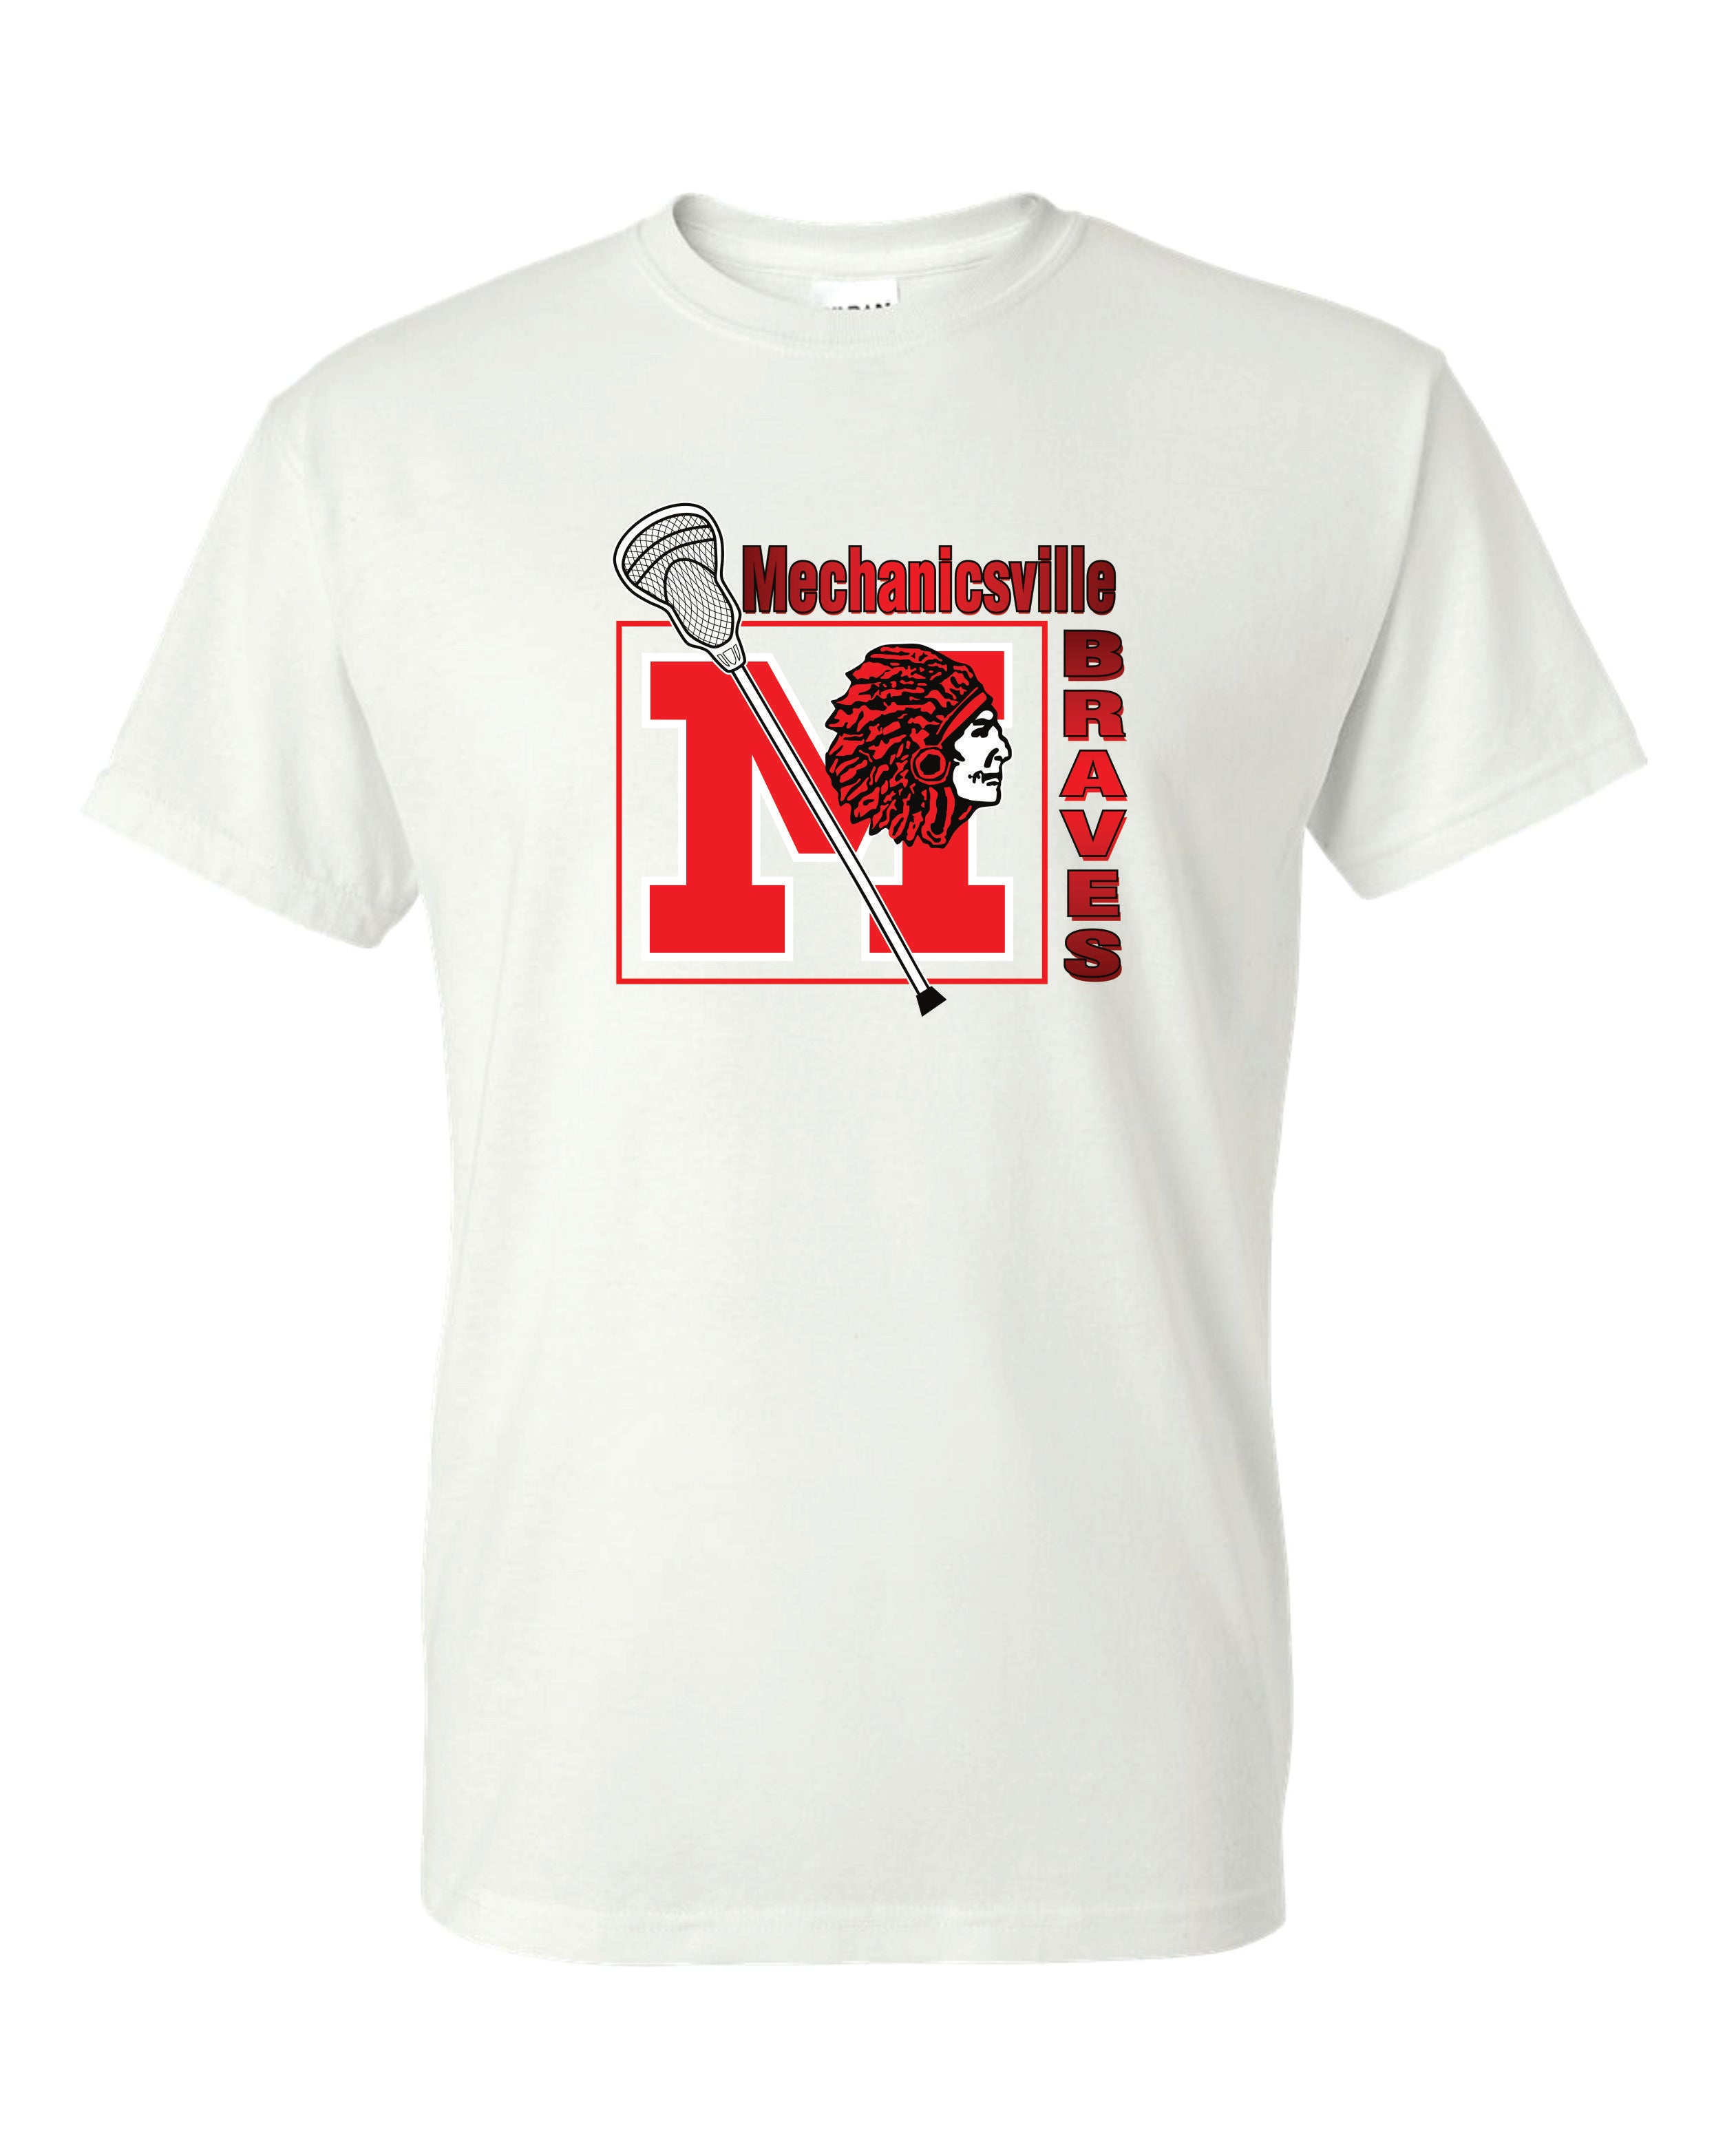 Mechanicsville Braves Short Sleeve T-Shirt 50/50 Blend - LAX